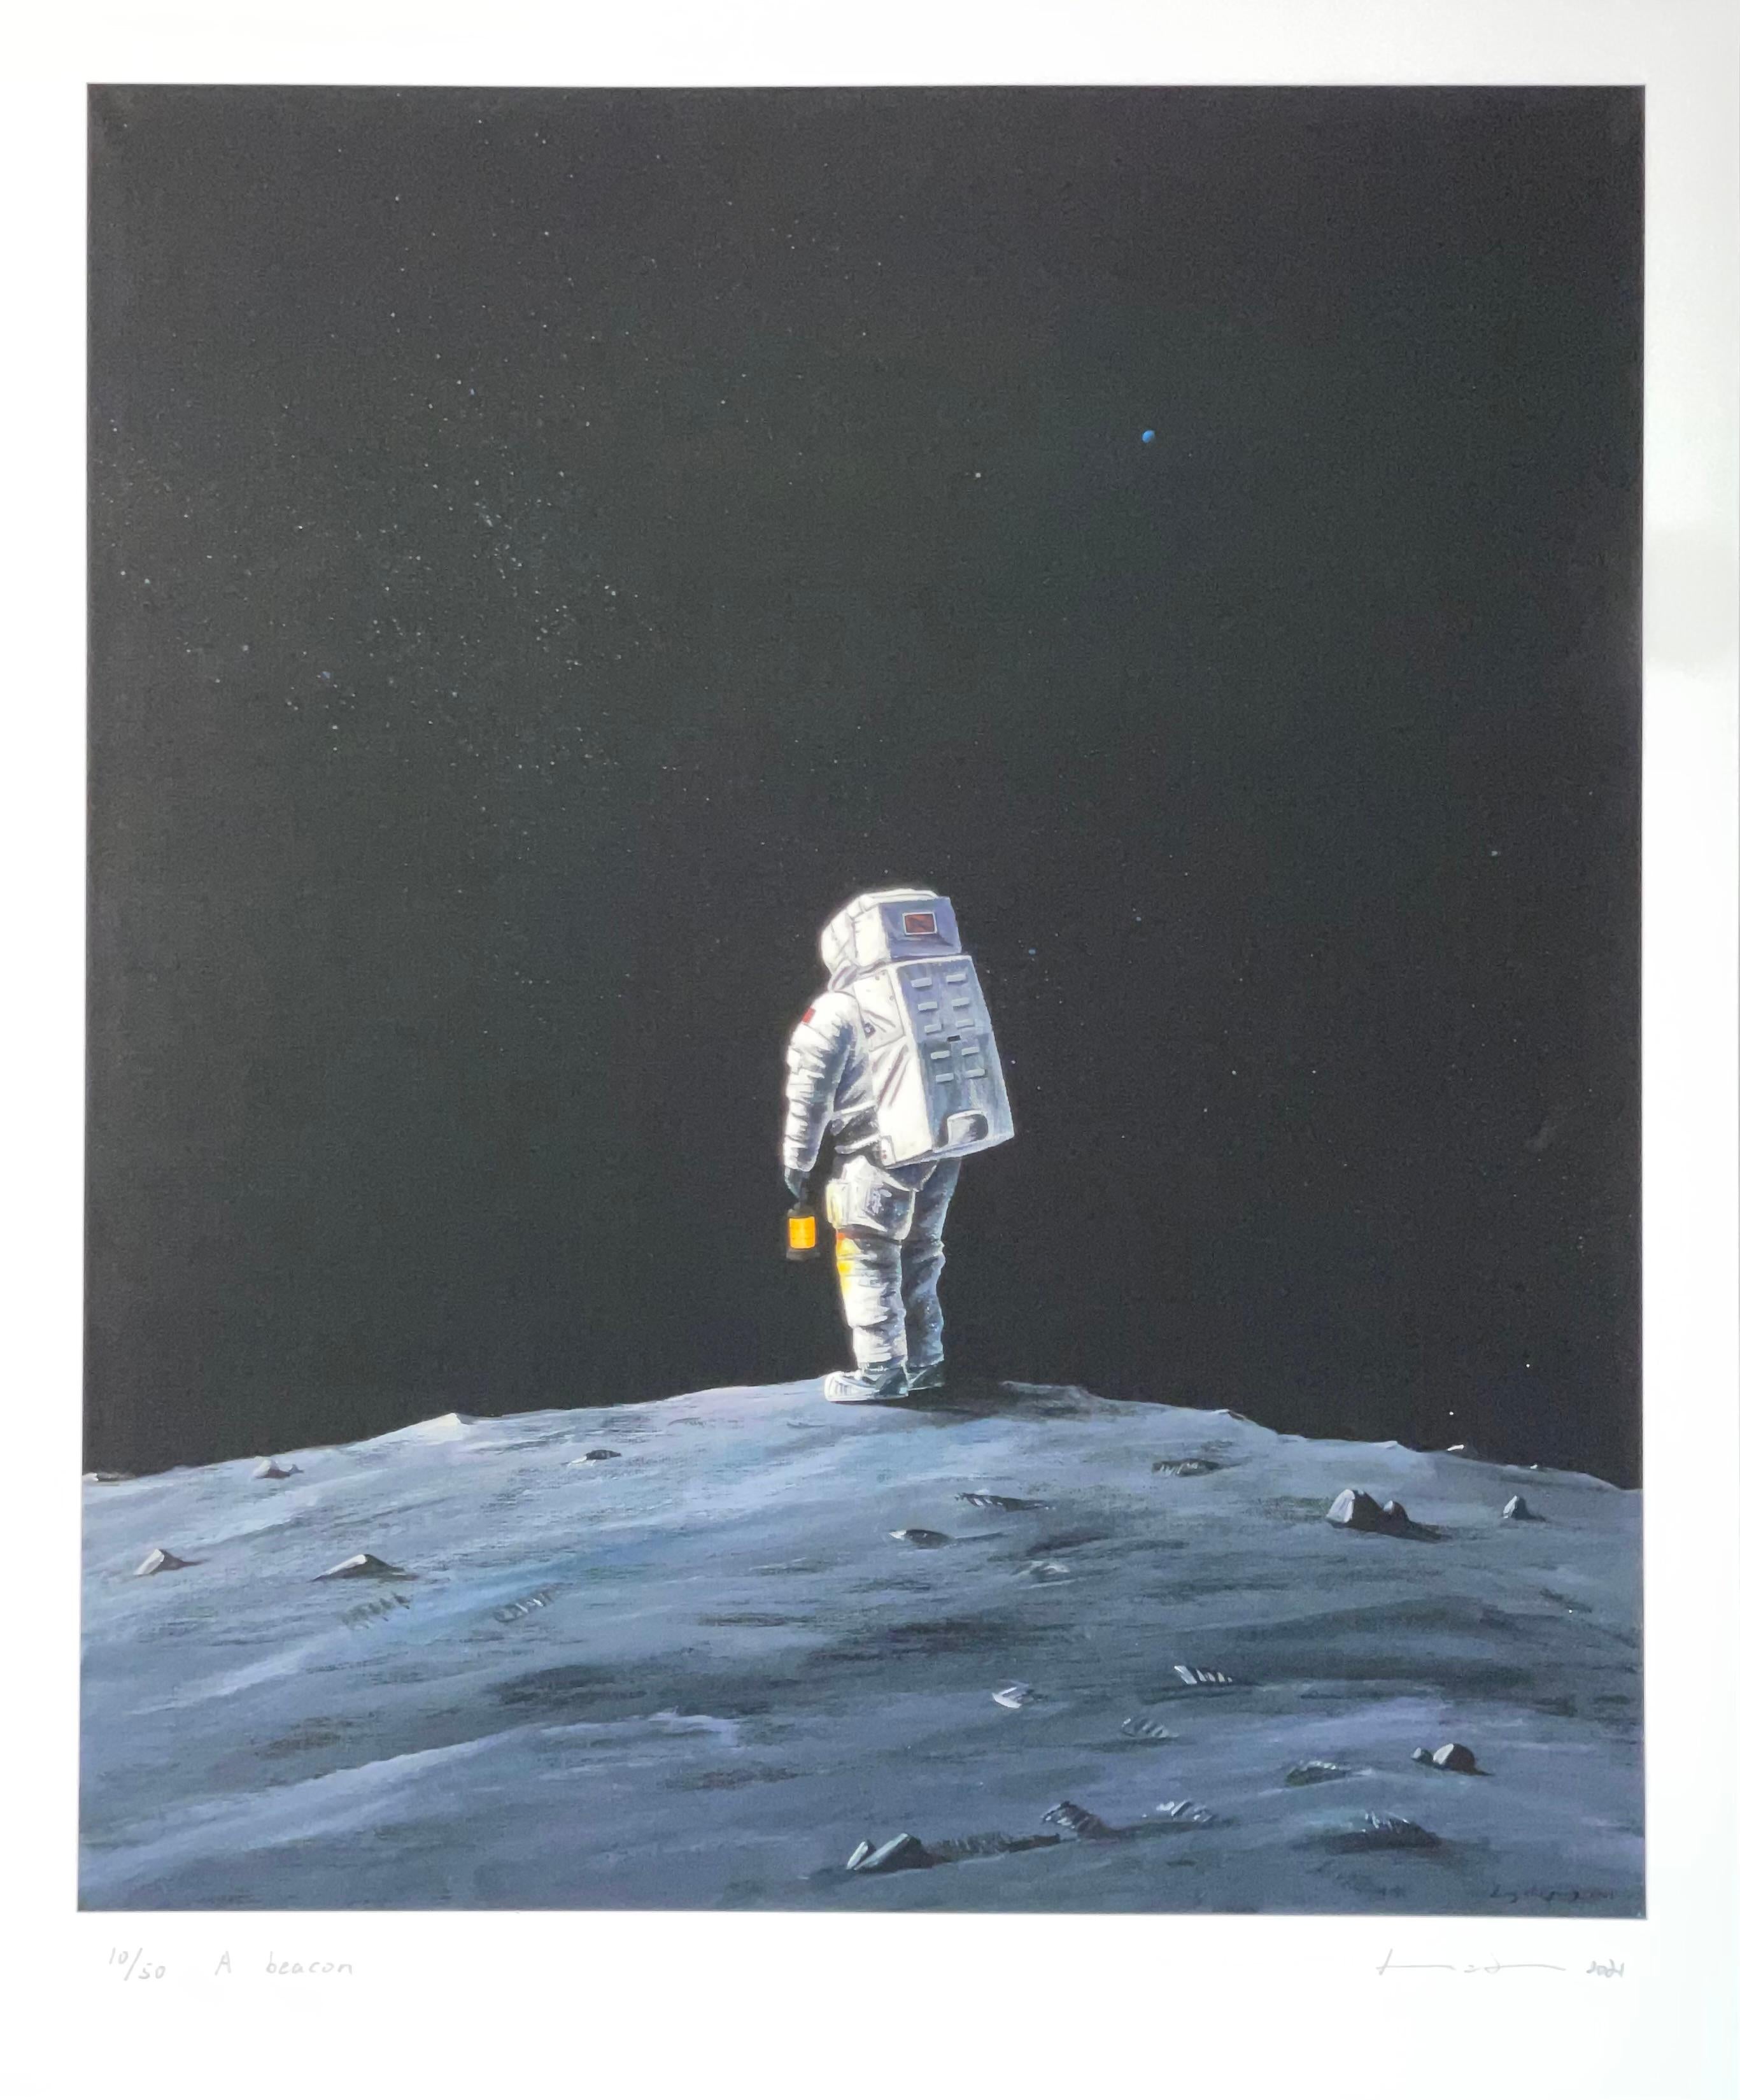 Jing Zhiyong "A Beacon" Contemporary Art Astronauts Series